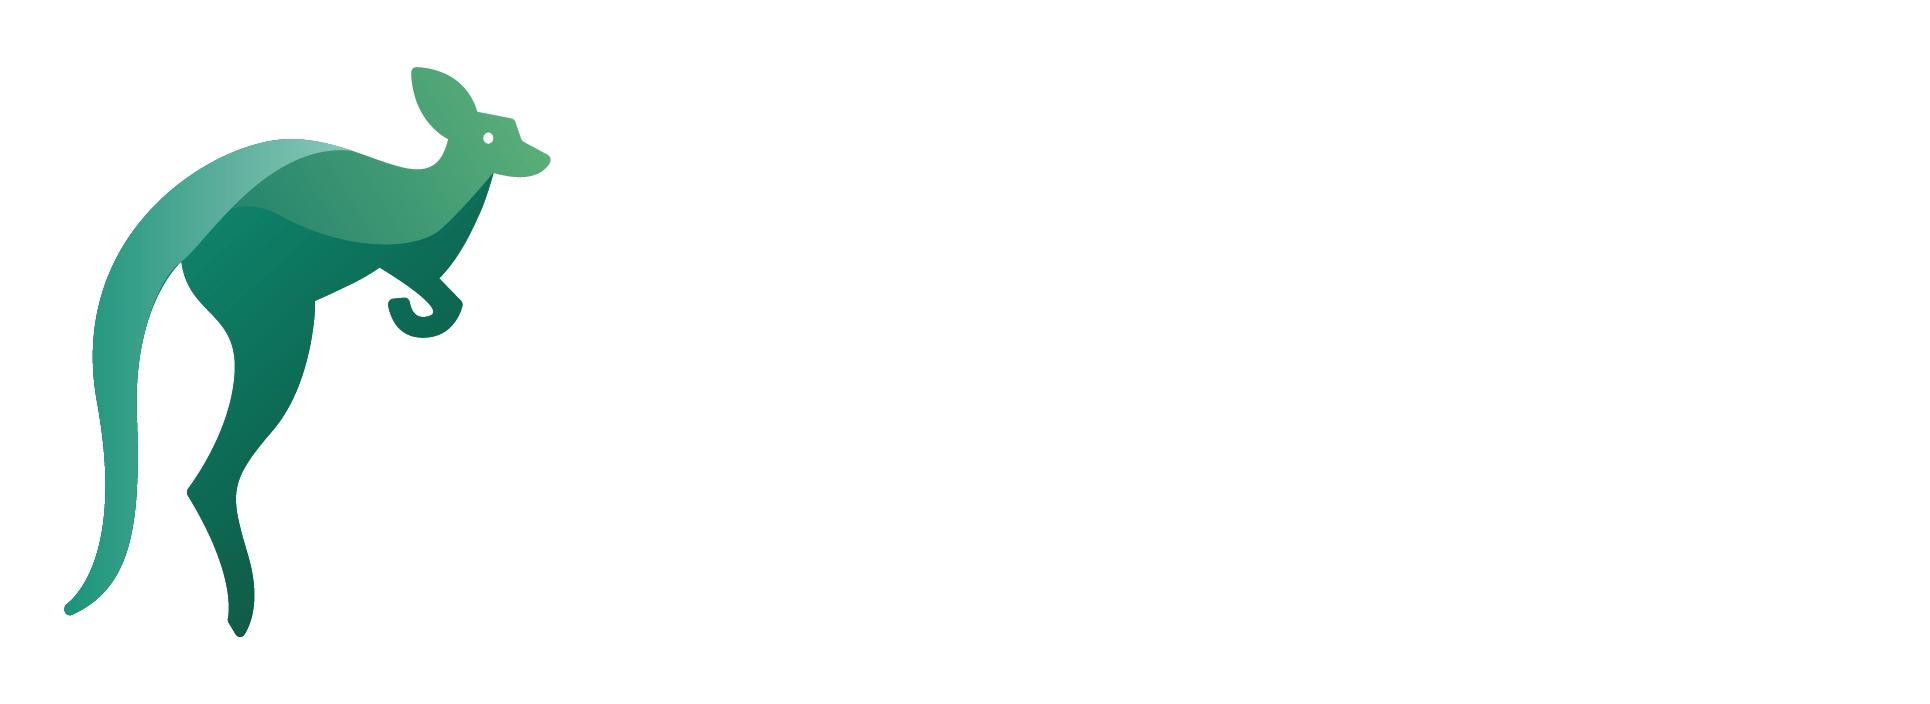 green kangaroo logo